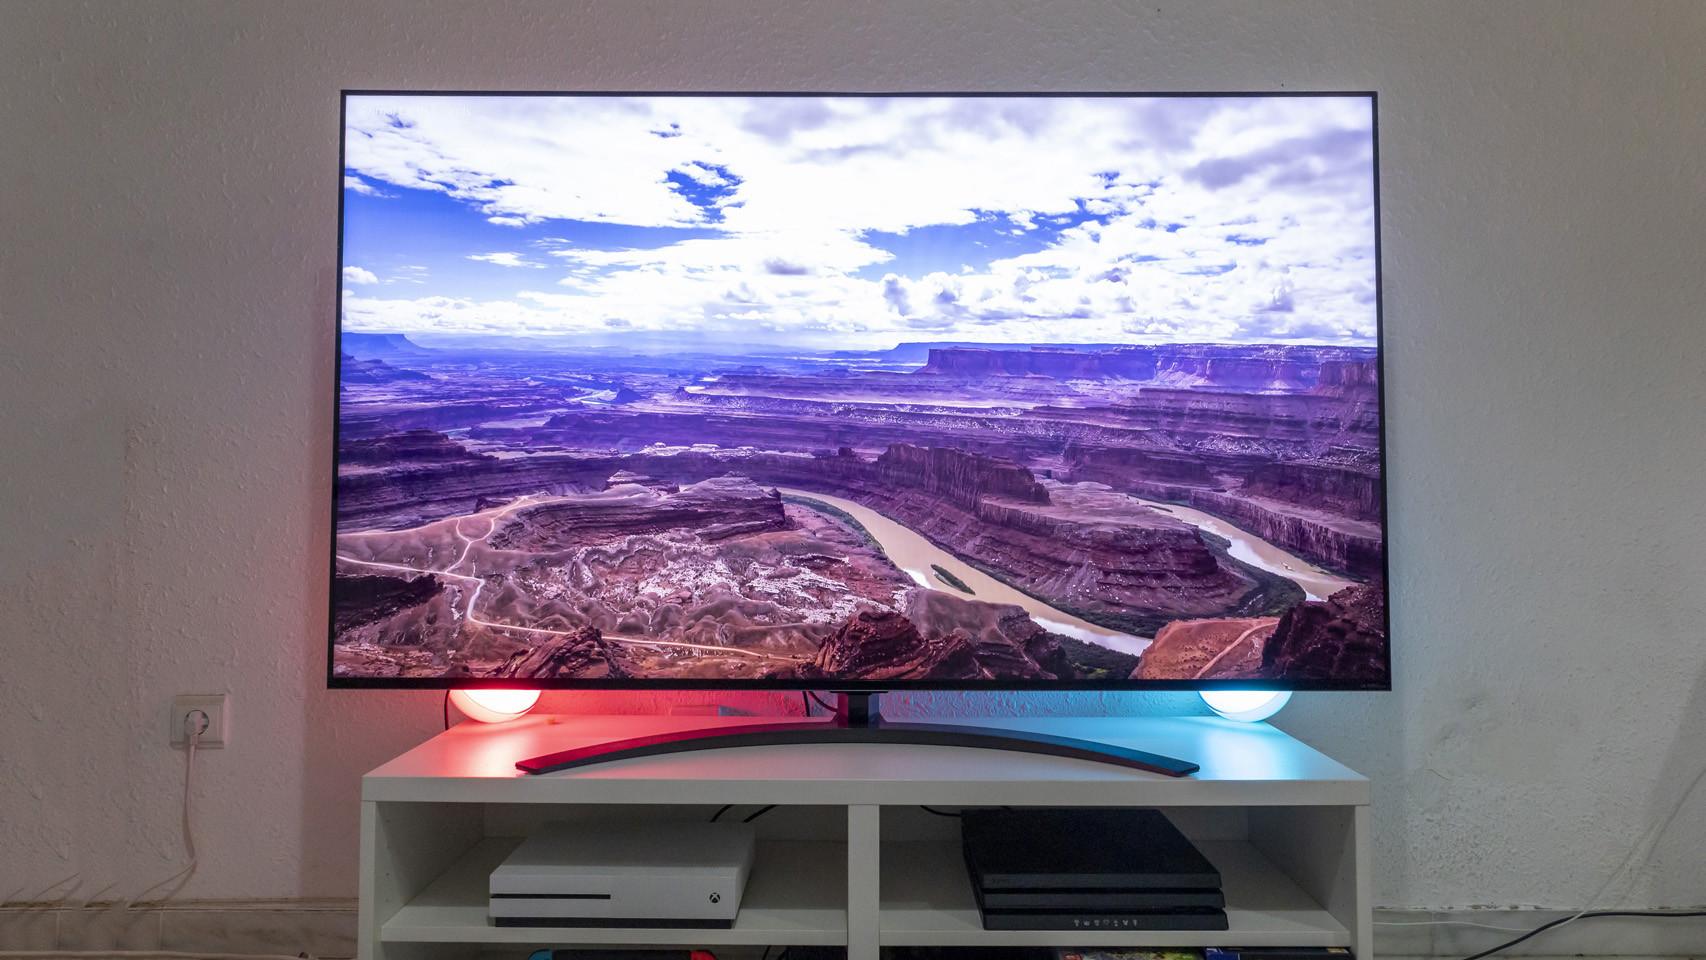 LG presenta sus nuevos televisores OLED de 97 y 42 pulgadas, webOS